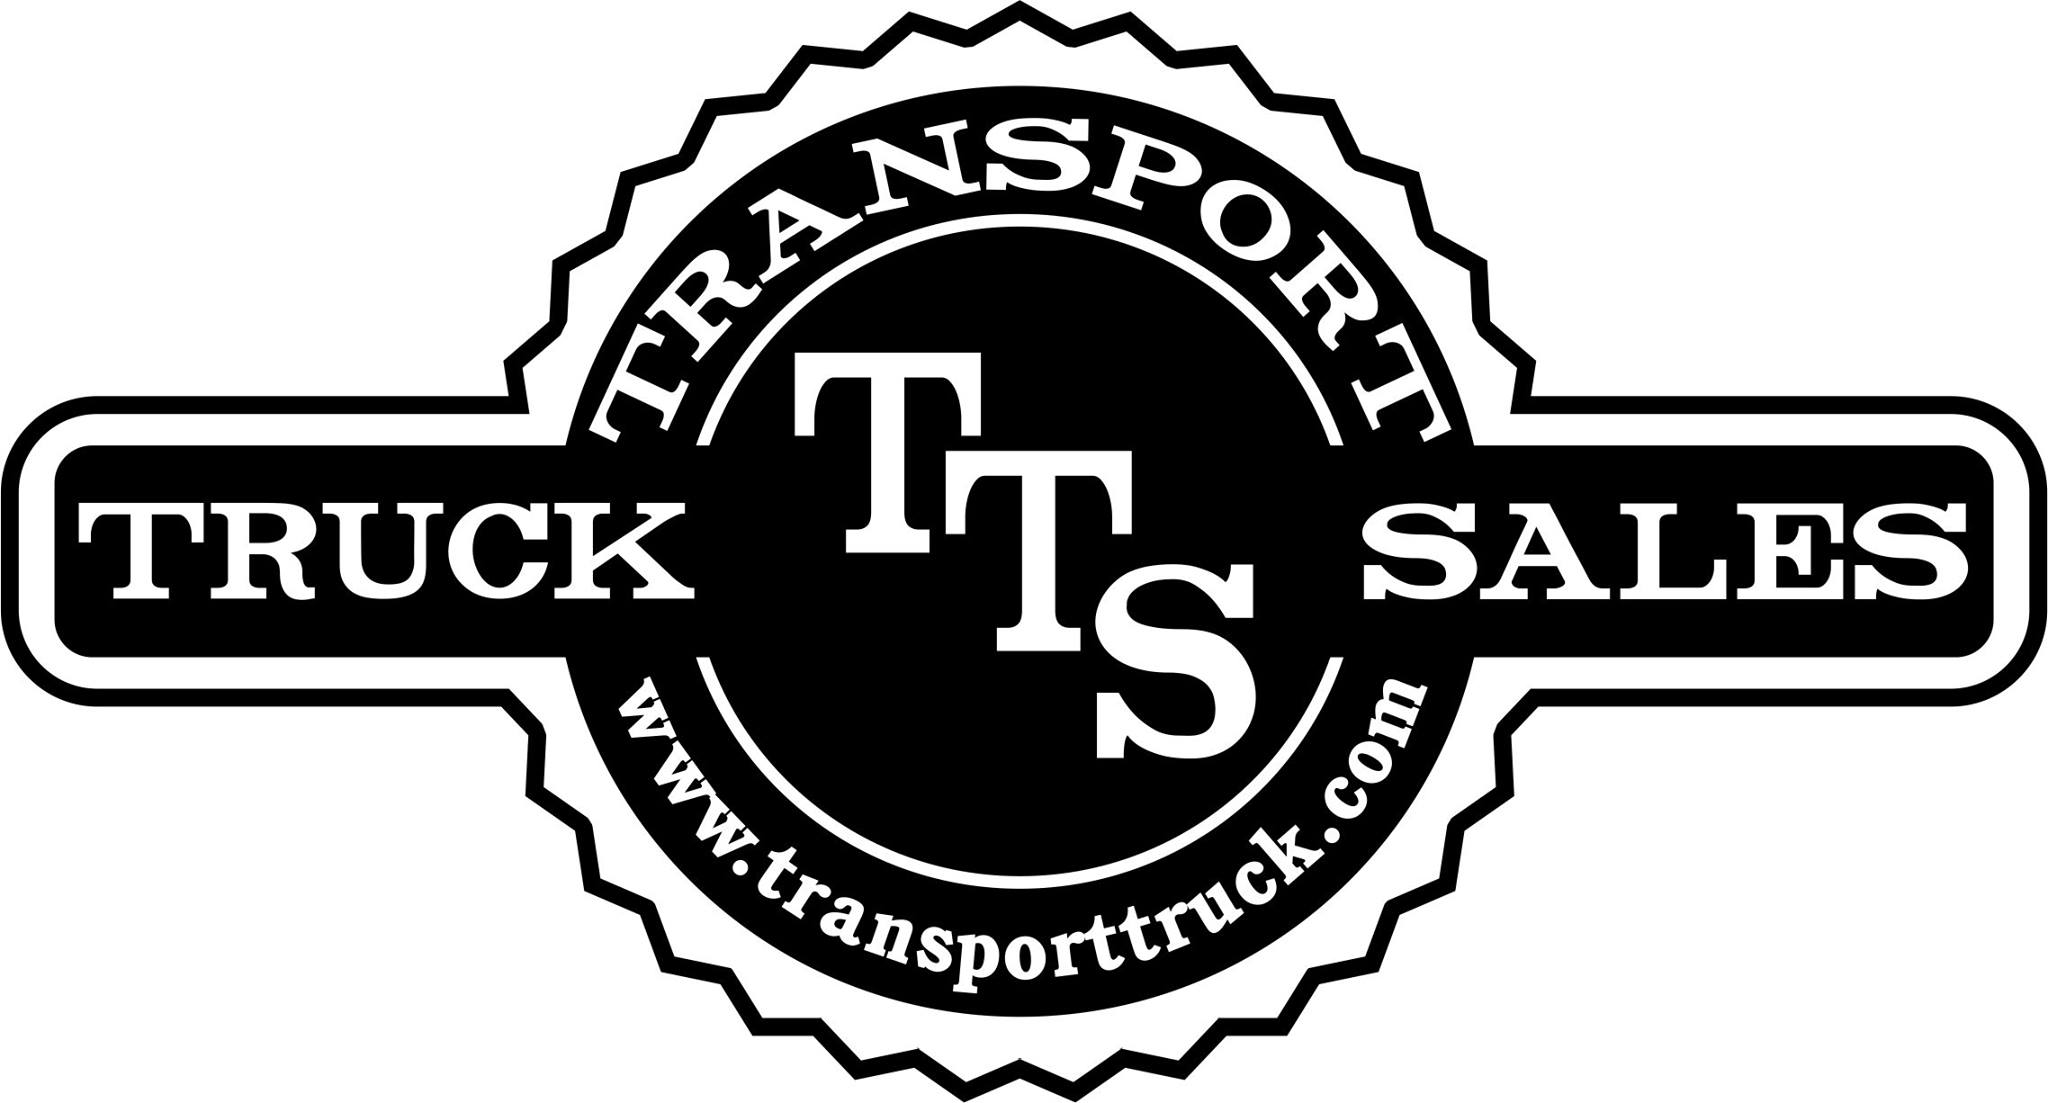 Transport Truck Sales Inc Kansas City, KS COSSD